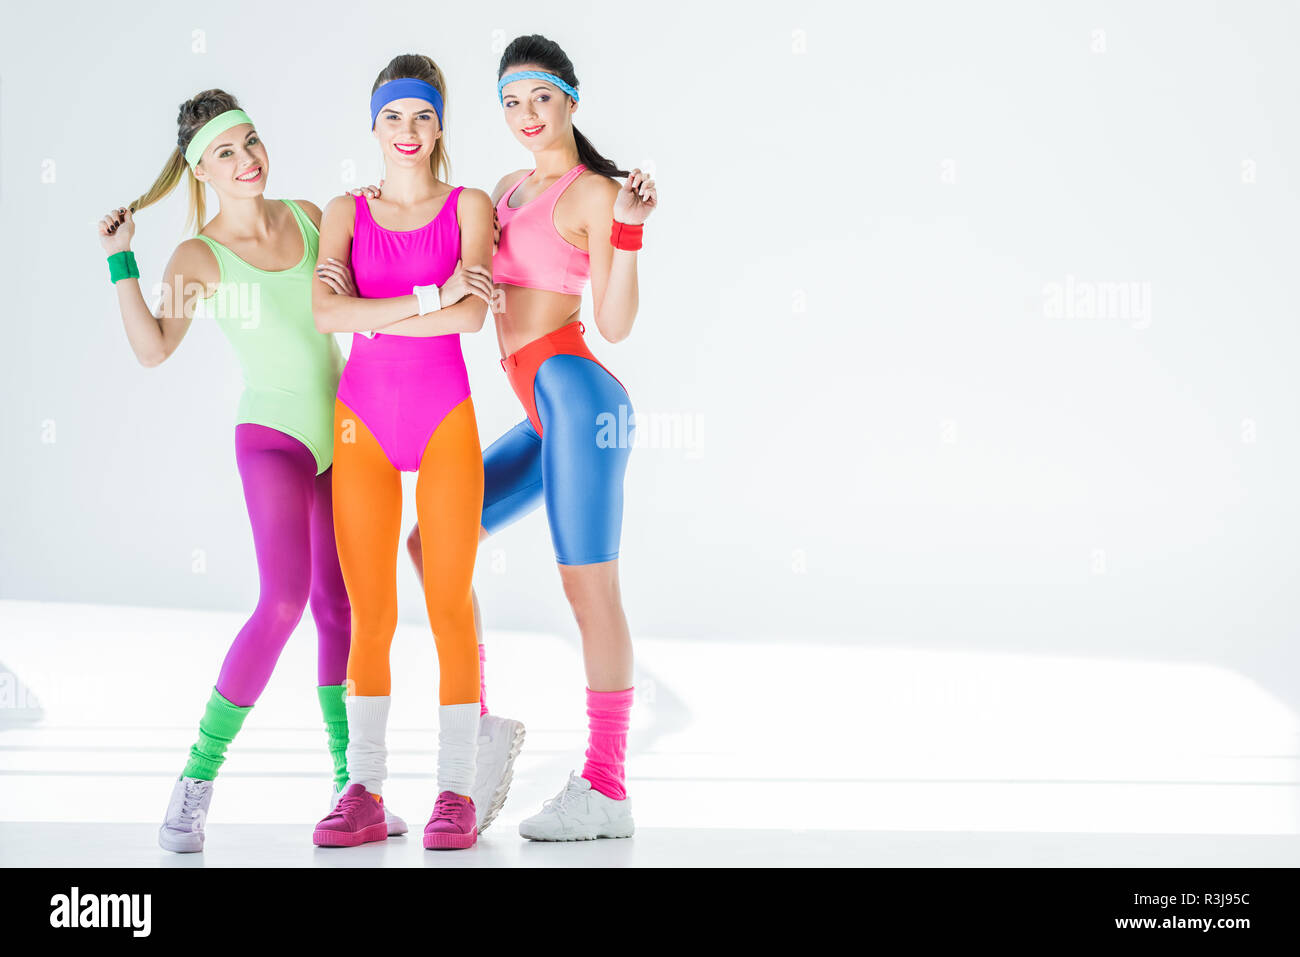 Volle Länge Blick auf schöne sportliche Mädchen im 80er Jahre Stil  Sportswear an Kamera lächelnd auf Grau Stockfotografie - Alamy